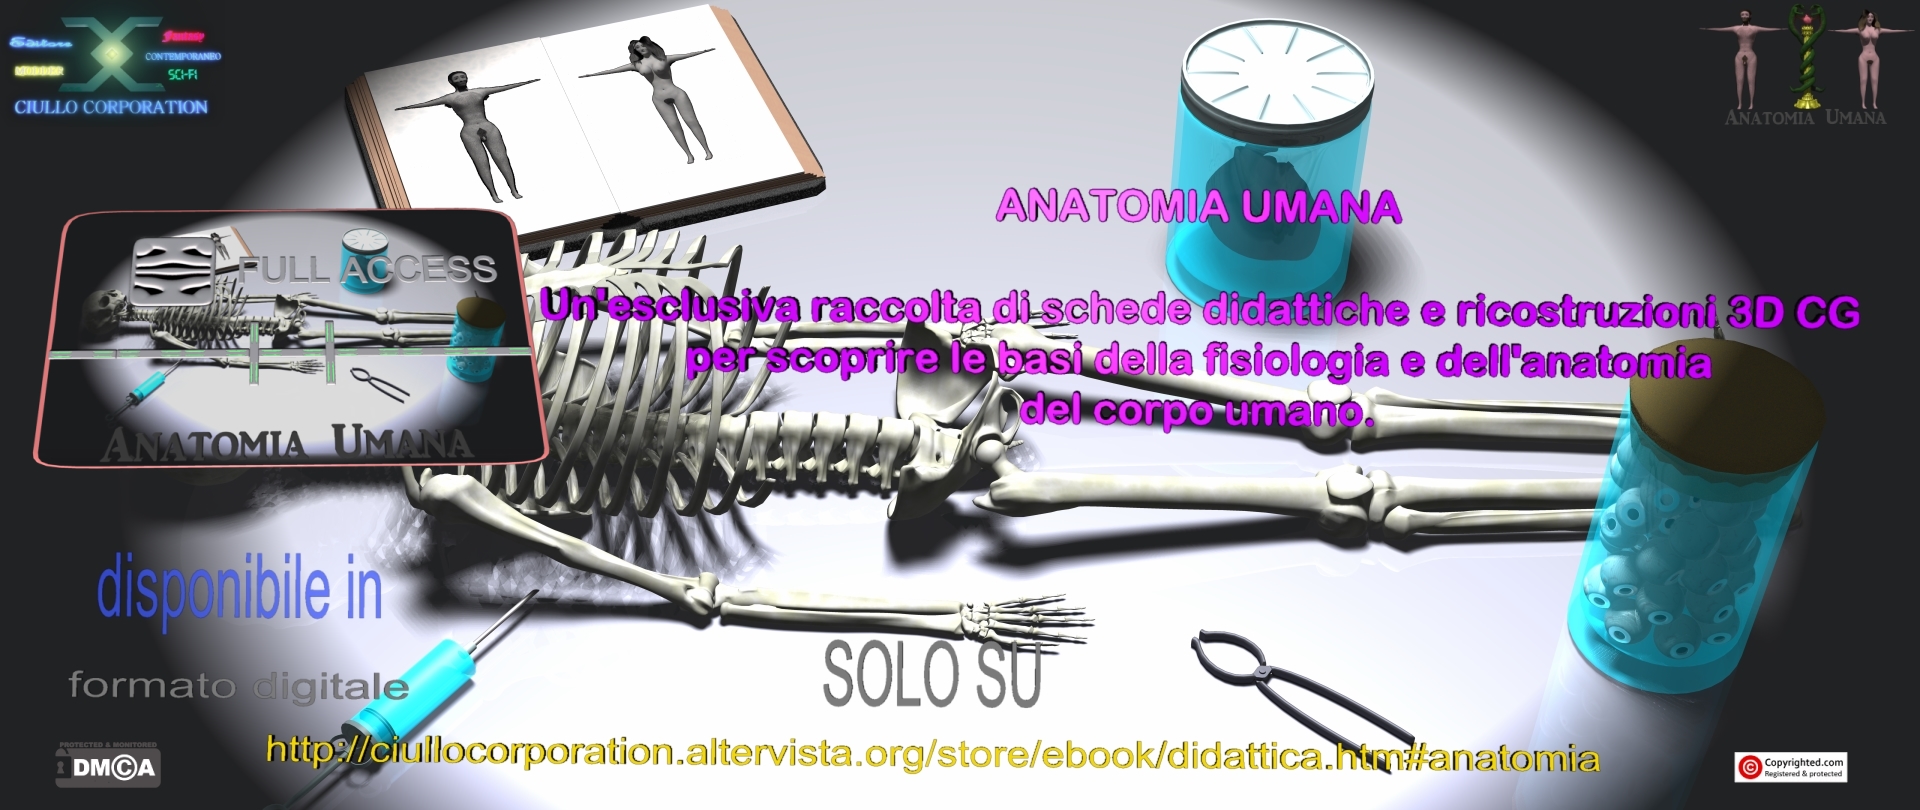 {VM18} ANATOMIA UMANA - Apparato Osteo-Articolare [eBOOK]